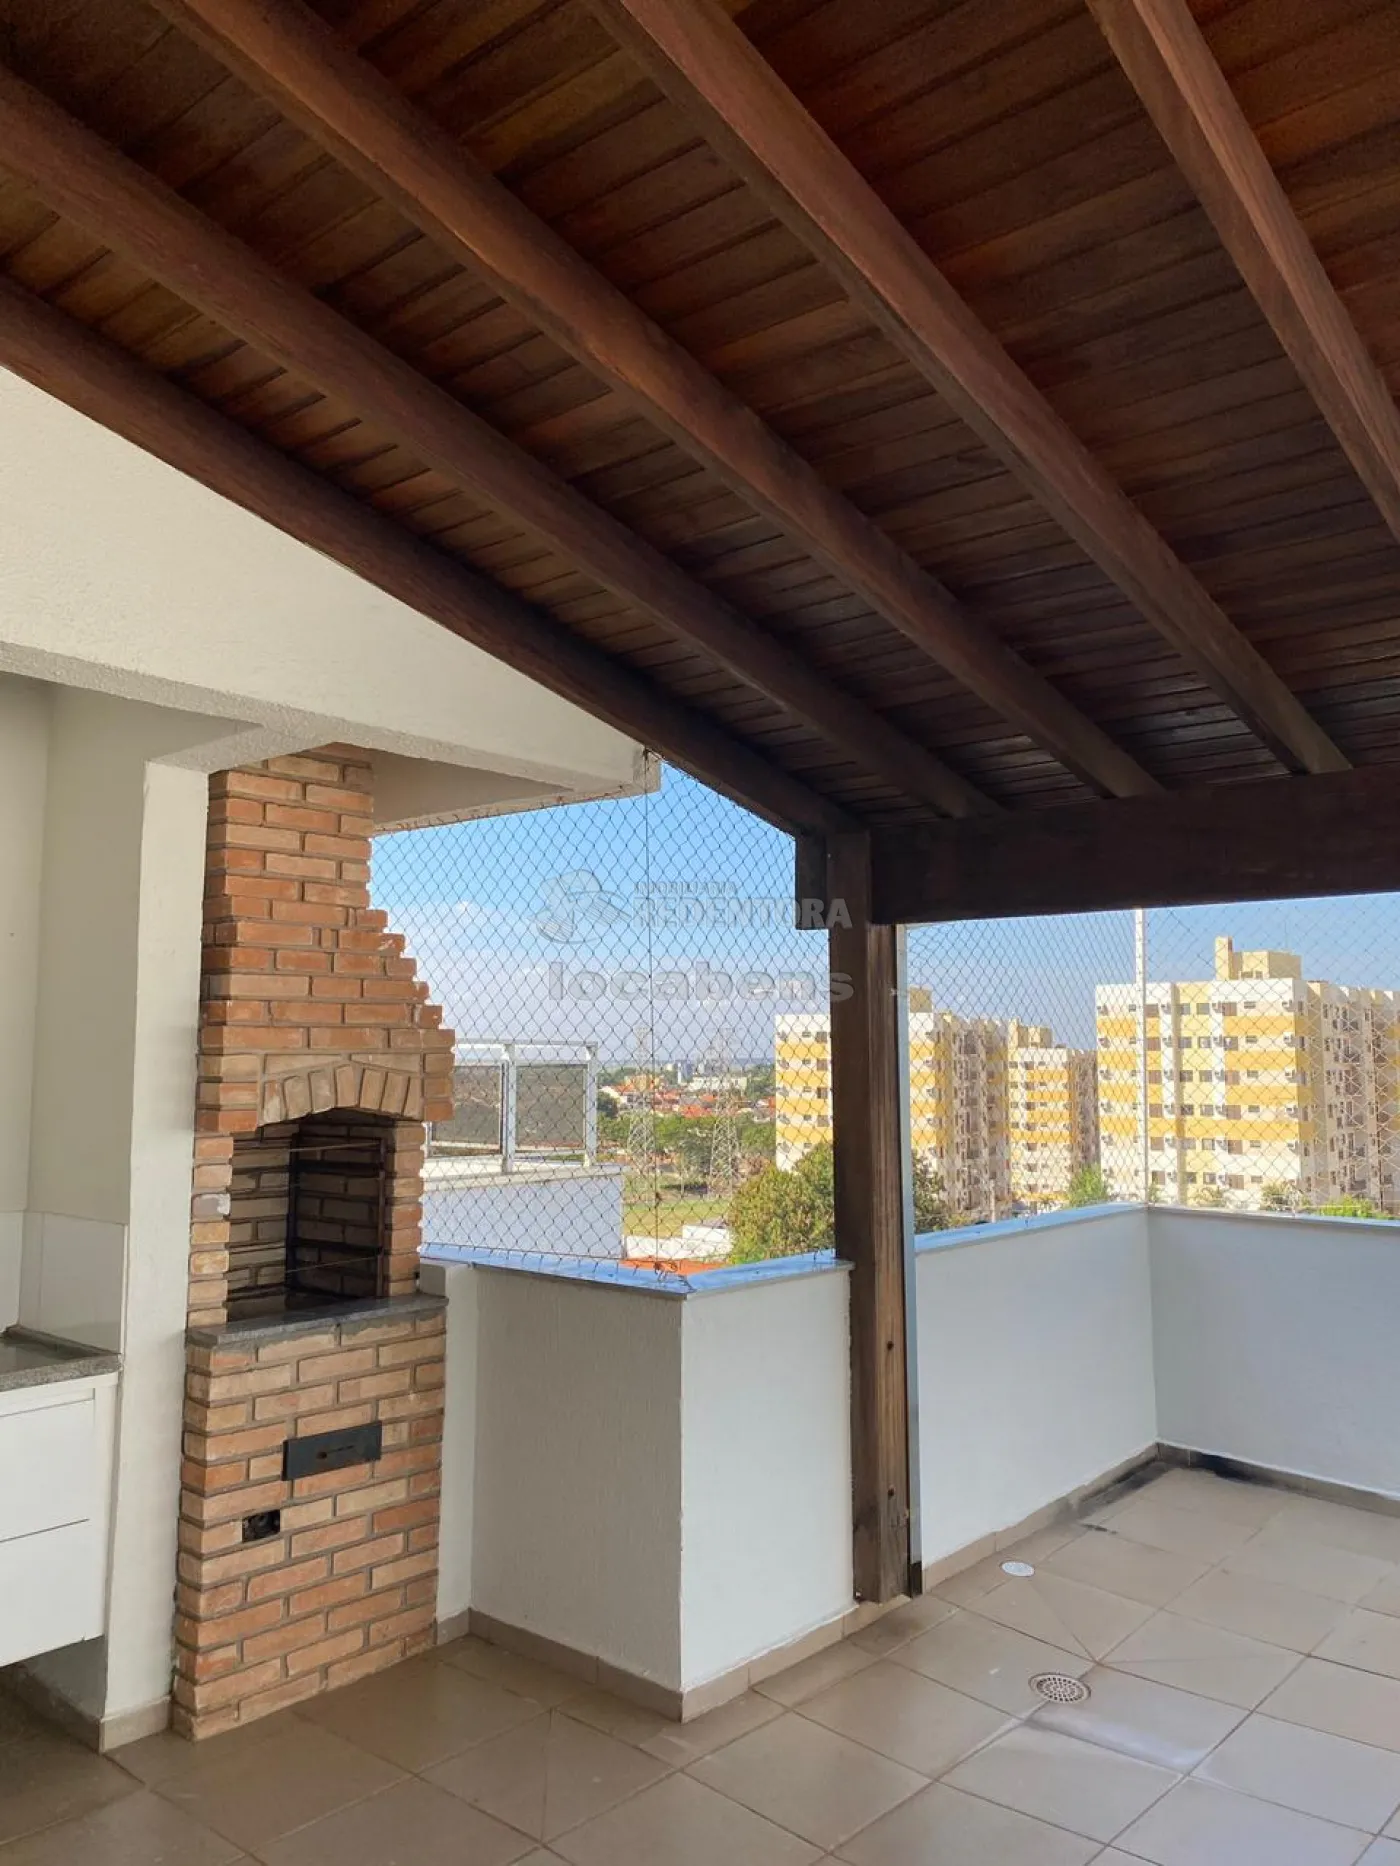 Comprar Apartamento / Padrão em São José do Rio Preto apenas R$ 320.000,00 - Foto 12